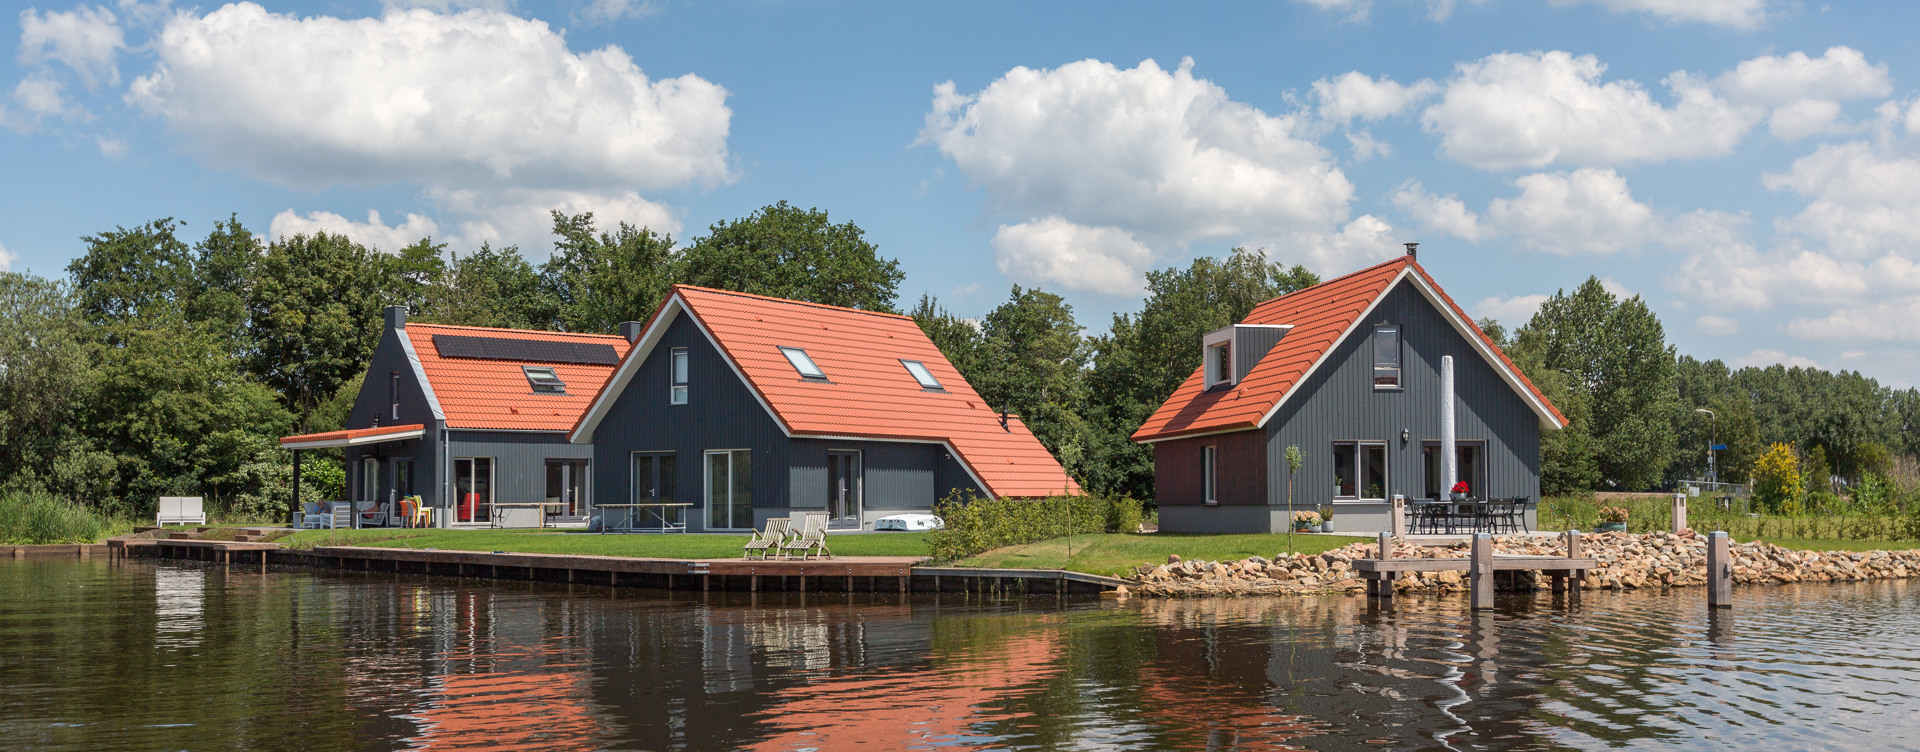 Genießen Sie einen herrlichen Urlaub
am Wasser in Friesland – inklusive Rabatt